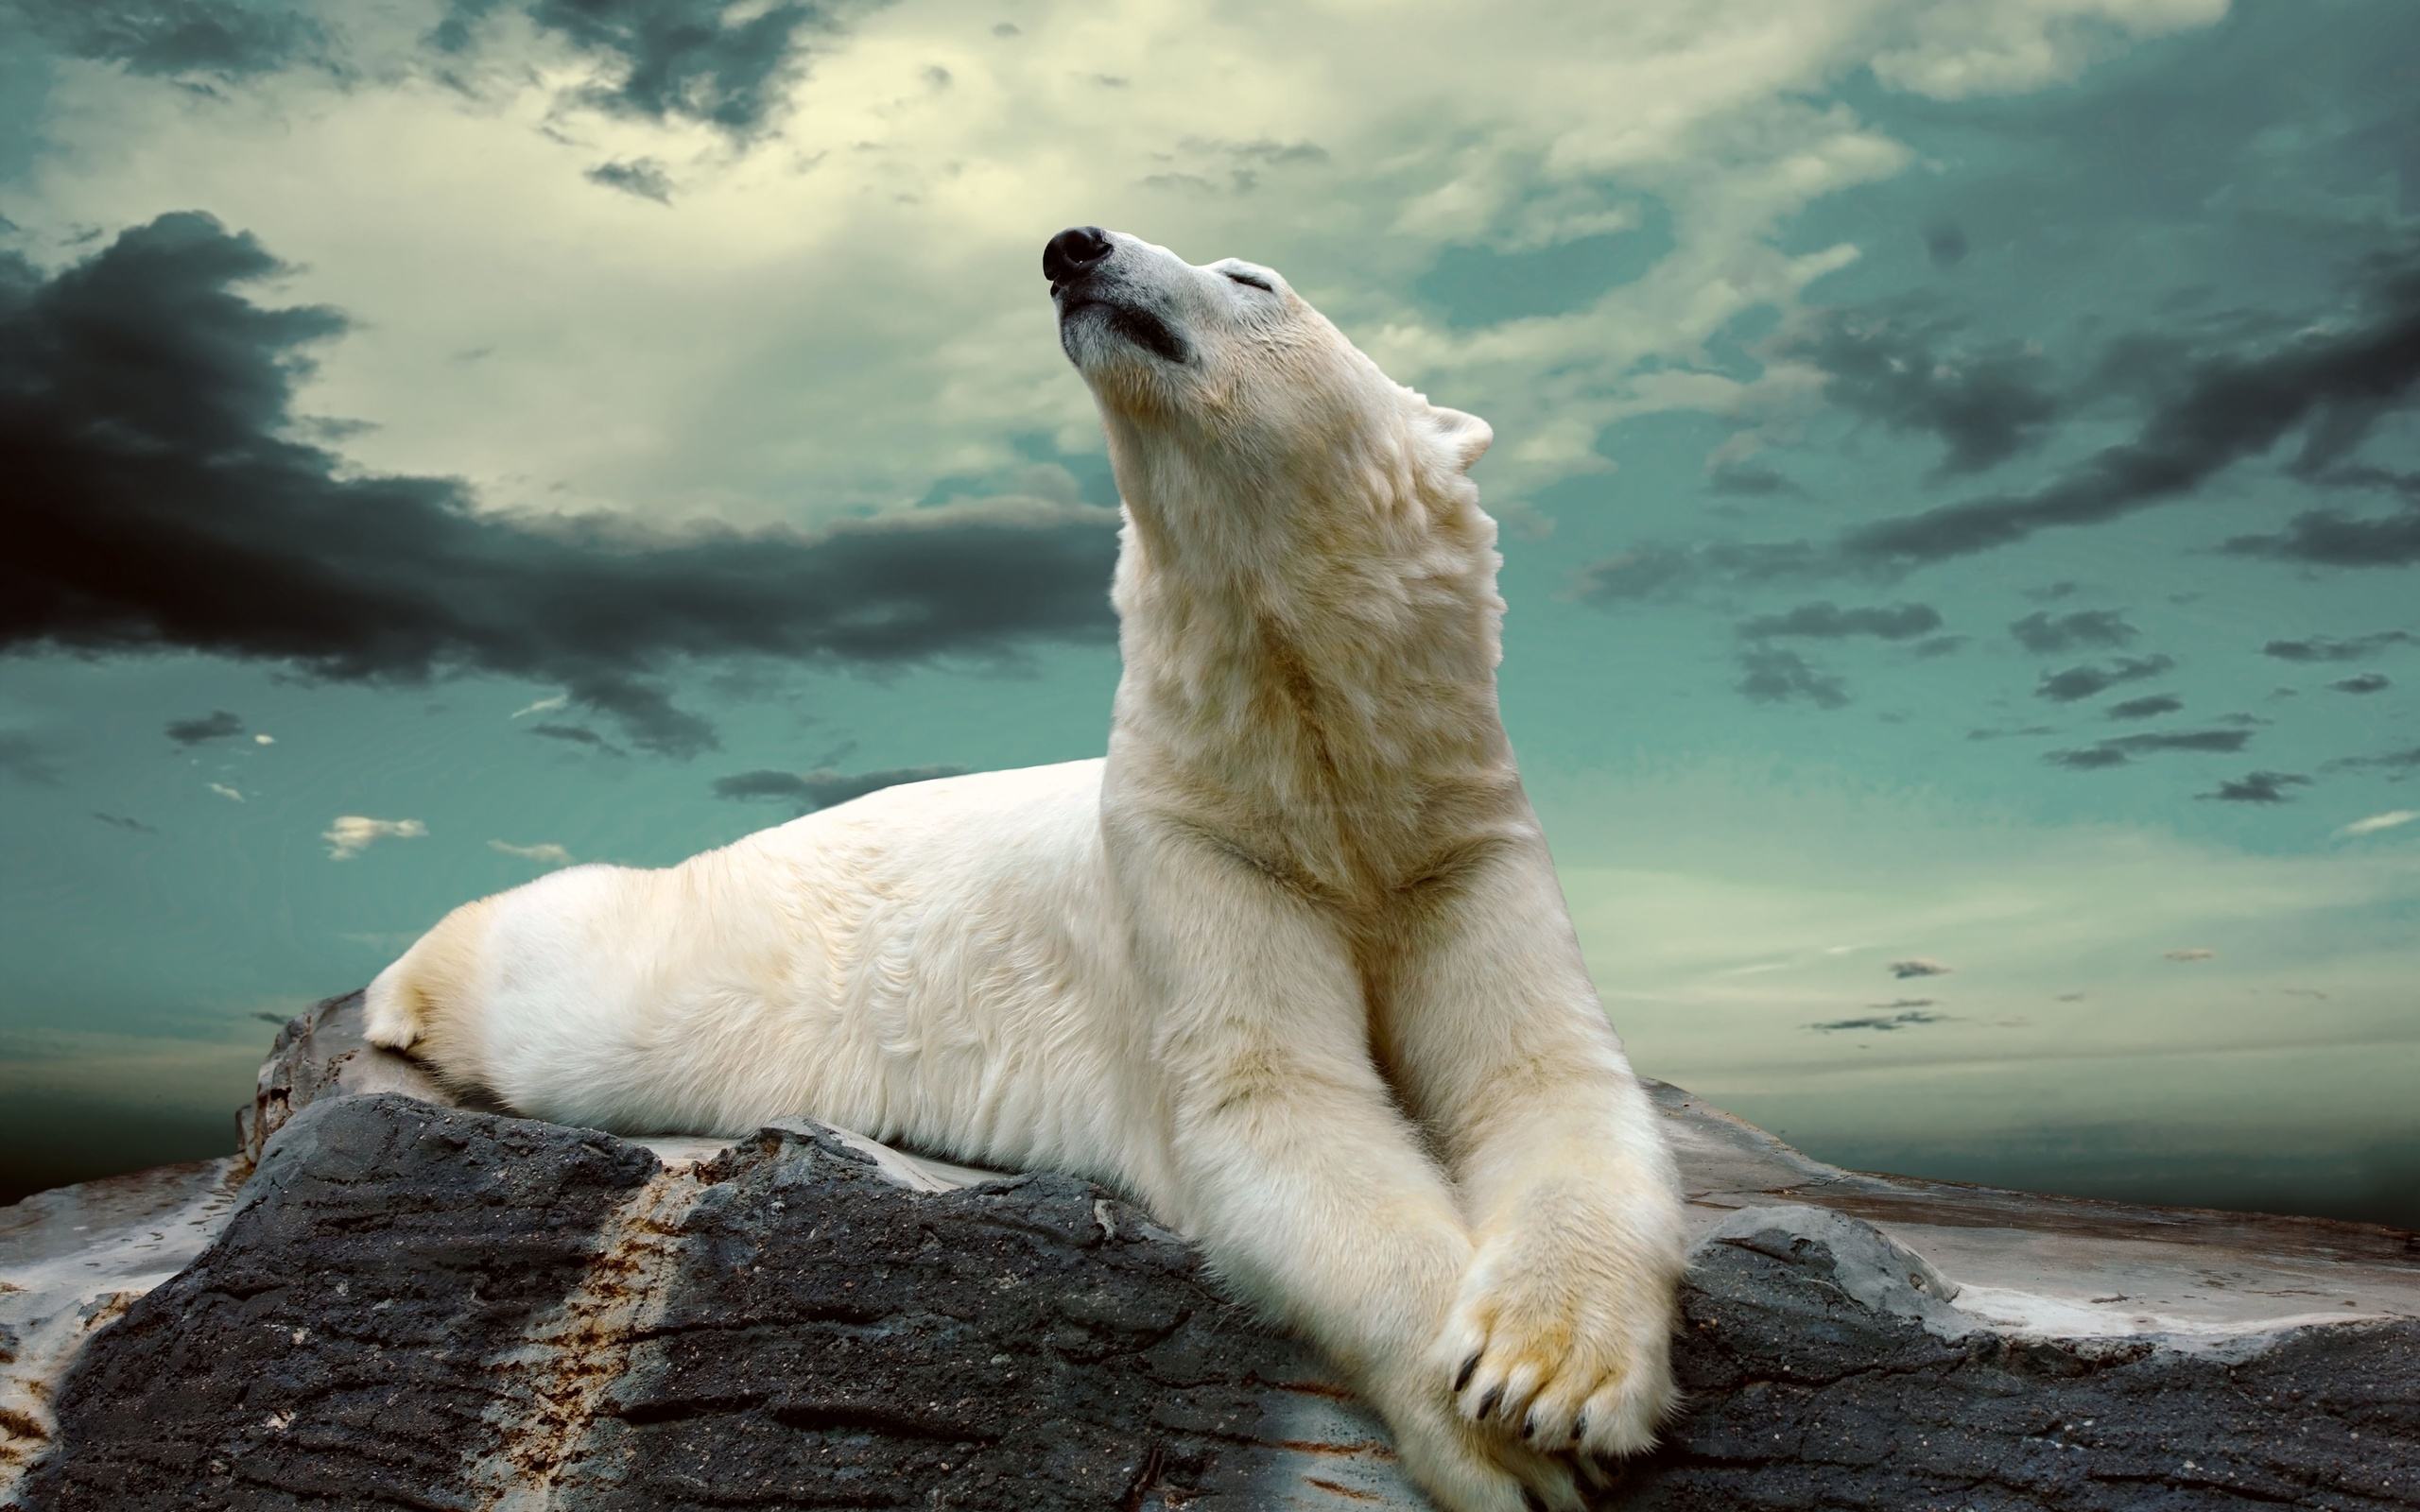 Nhìn vào hình ảnh gấu bắc cực, bạn sẽ cảm nhận được sự mạnh mẽ và kiên cường của loài động vật sống trong môi trường khắc nghiệt như vậy. Với bầu trời đầy sao, hình ảnh này mang đến cho bạn sự tò mò và khát khao khám phá.